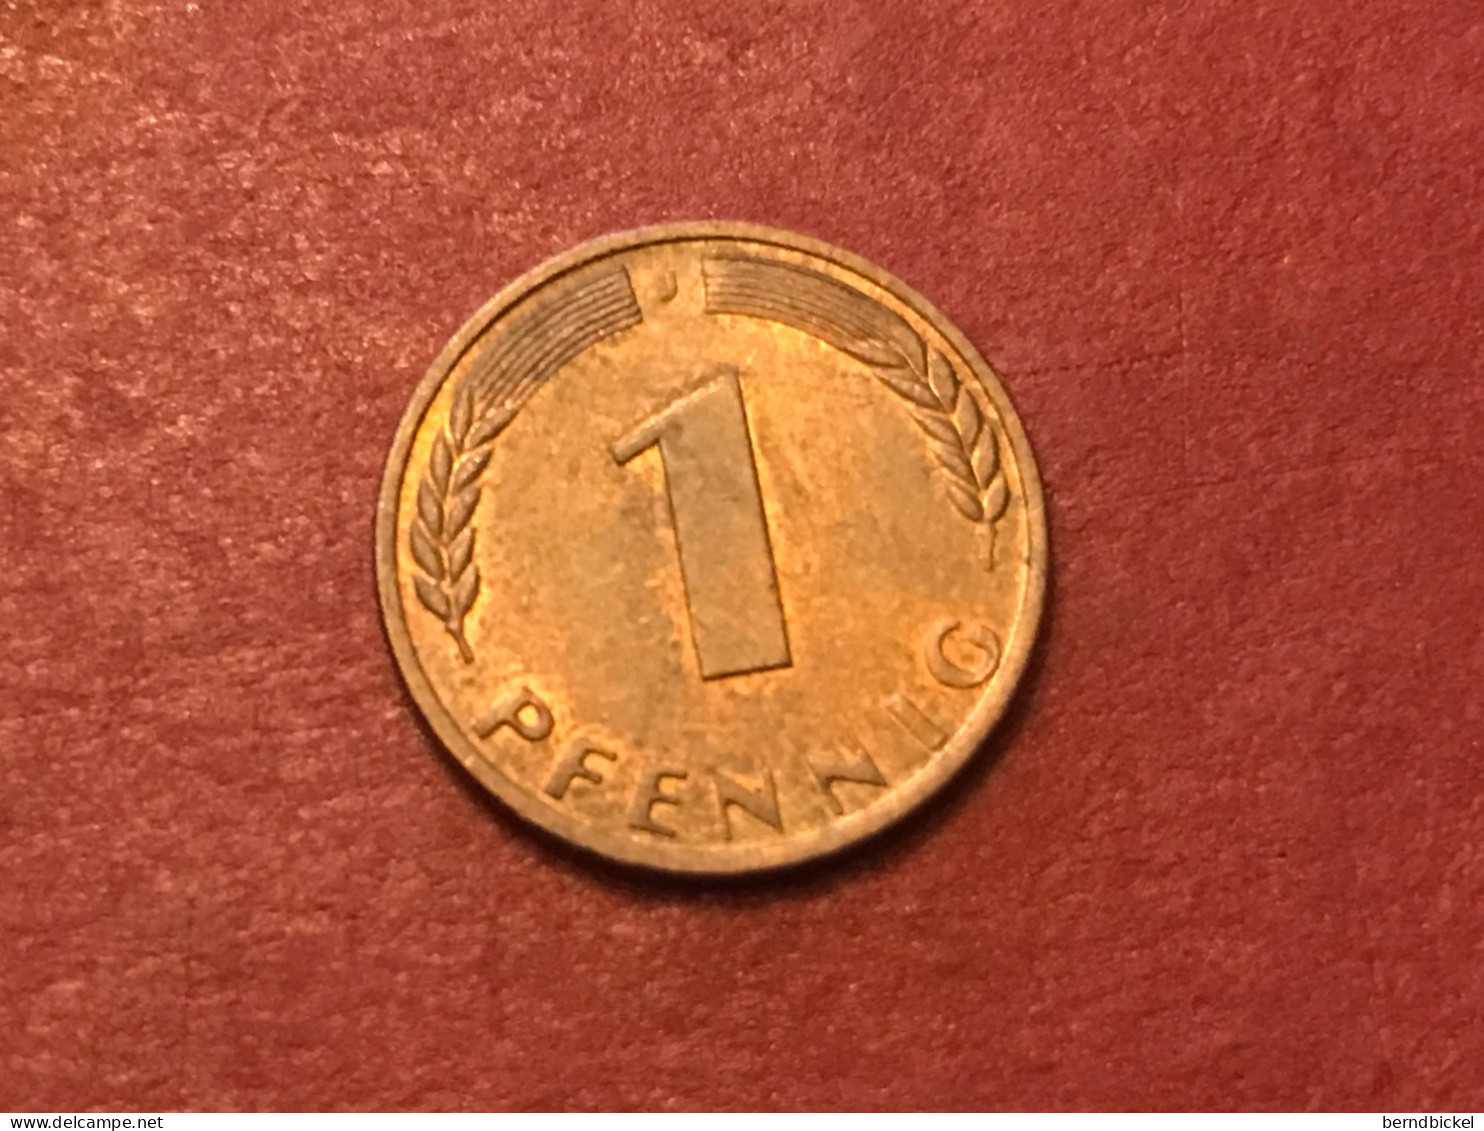 Münze Münzen Umlaufmünze Deutschland BRD 1 Pfennig 1968 Münzzeichen J - 1 Pfennig